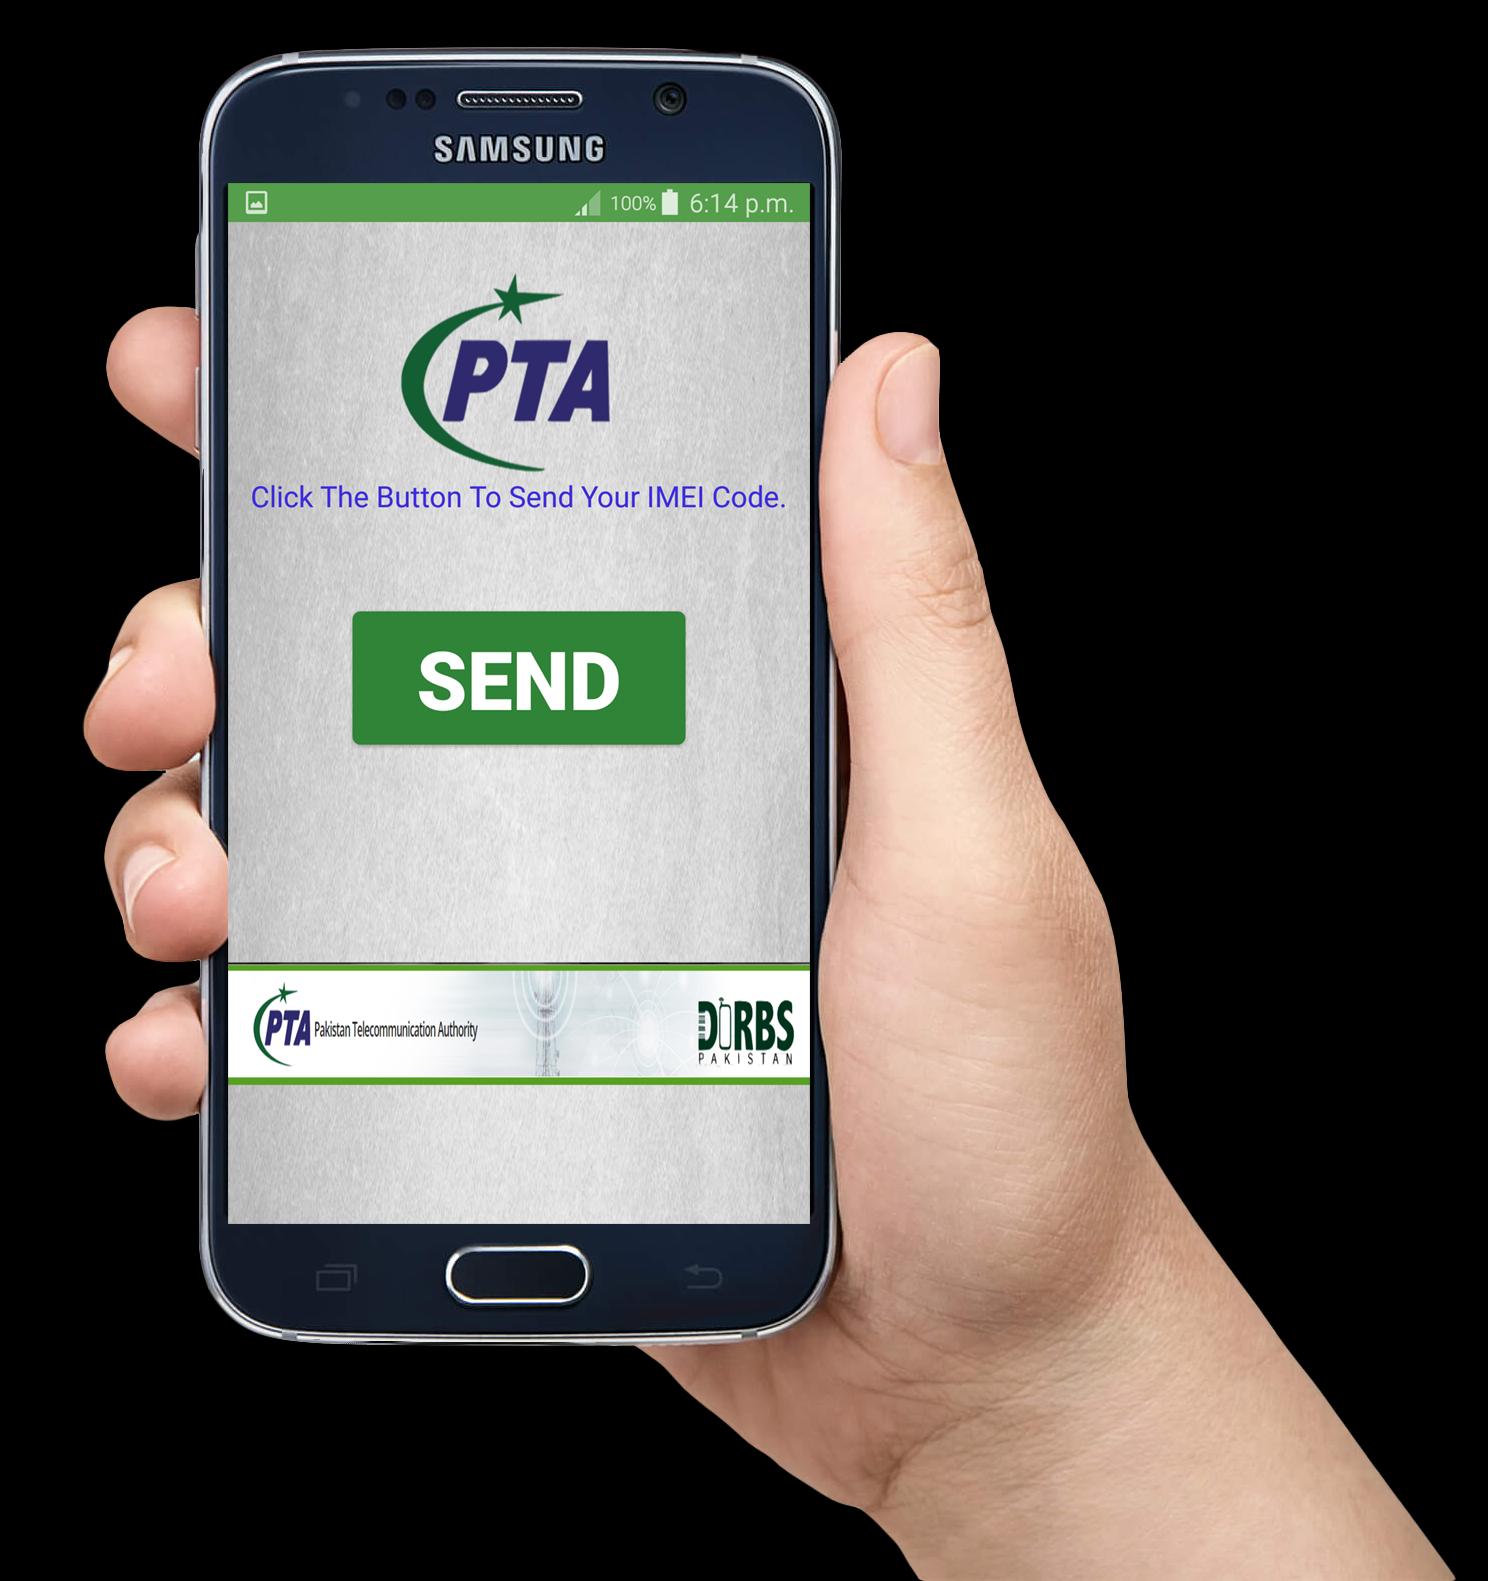 Samsung PTA registration